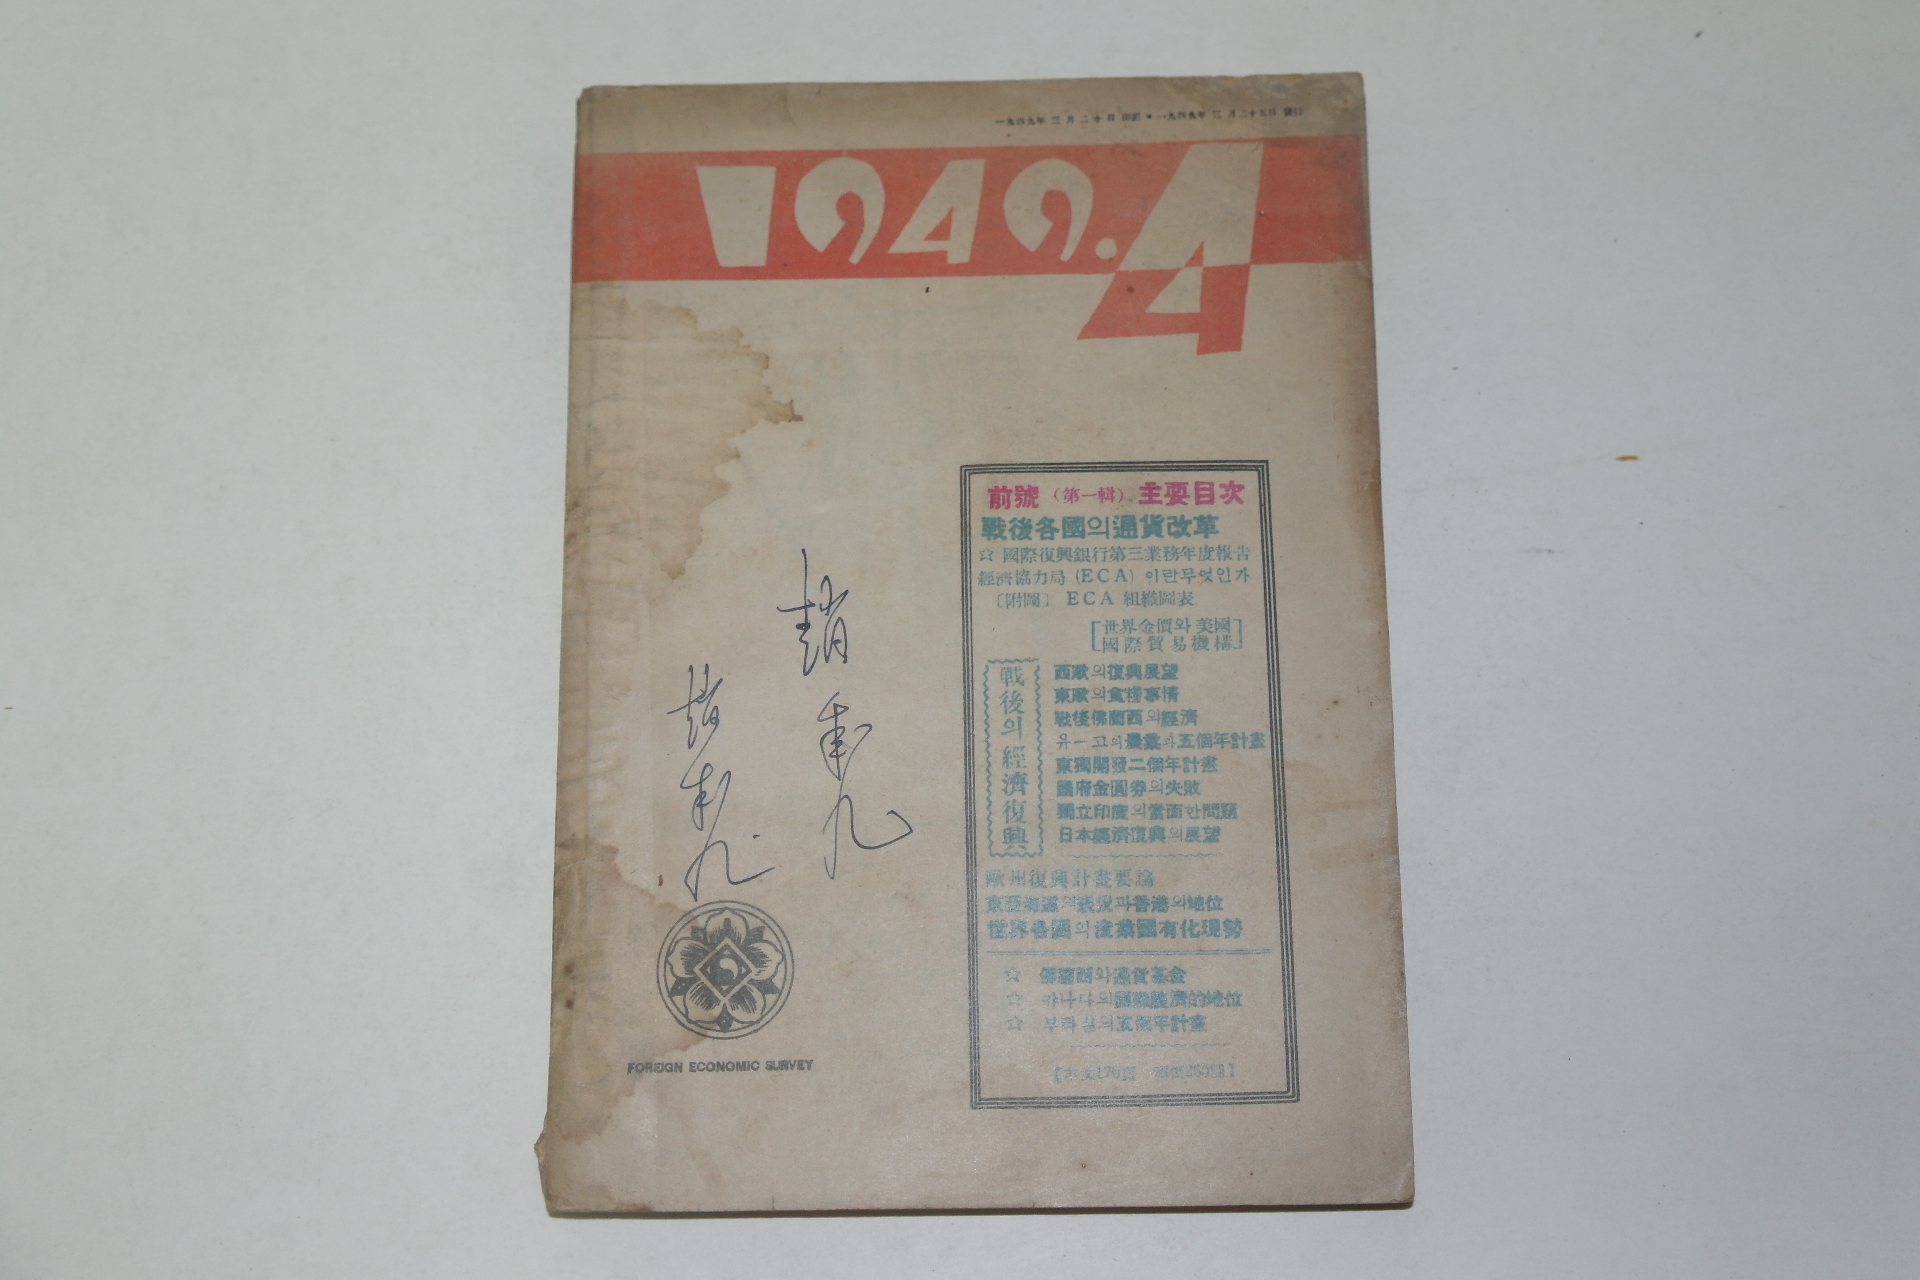 1949년 조선은행조사부발행 해외경제사정(海外經濟事情)